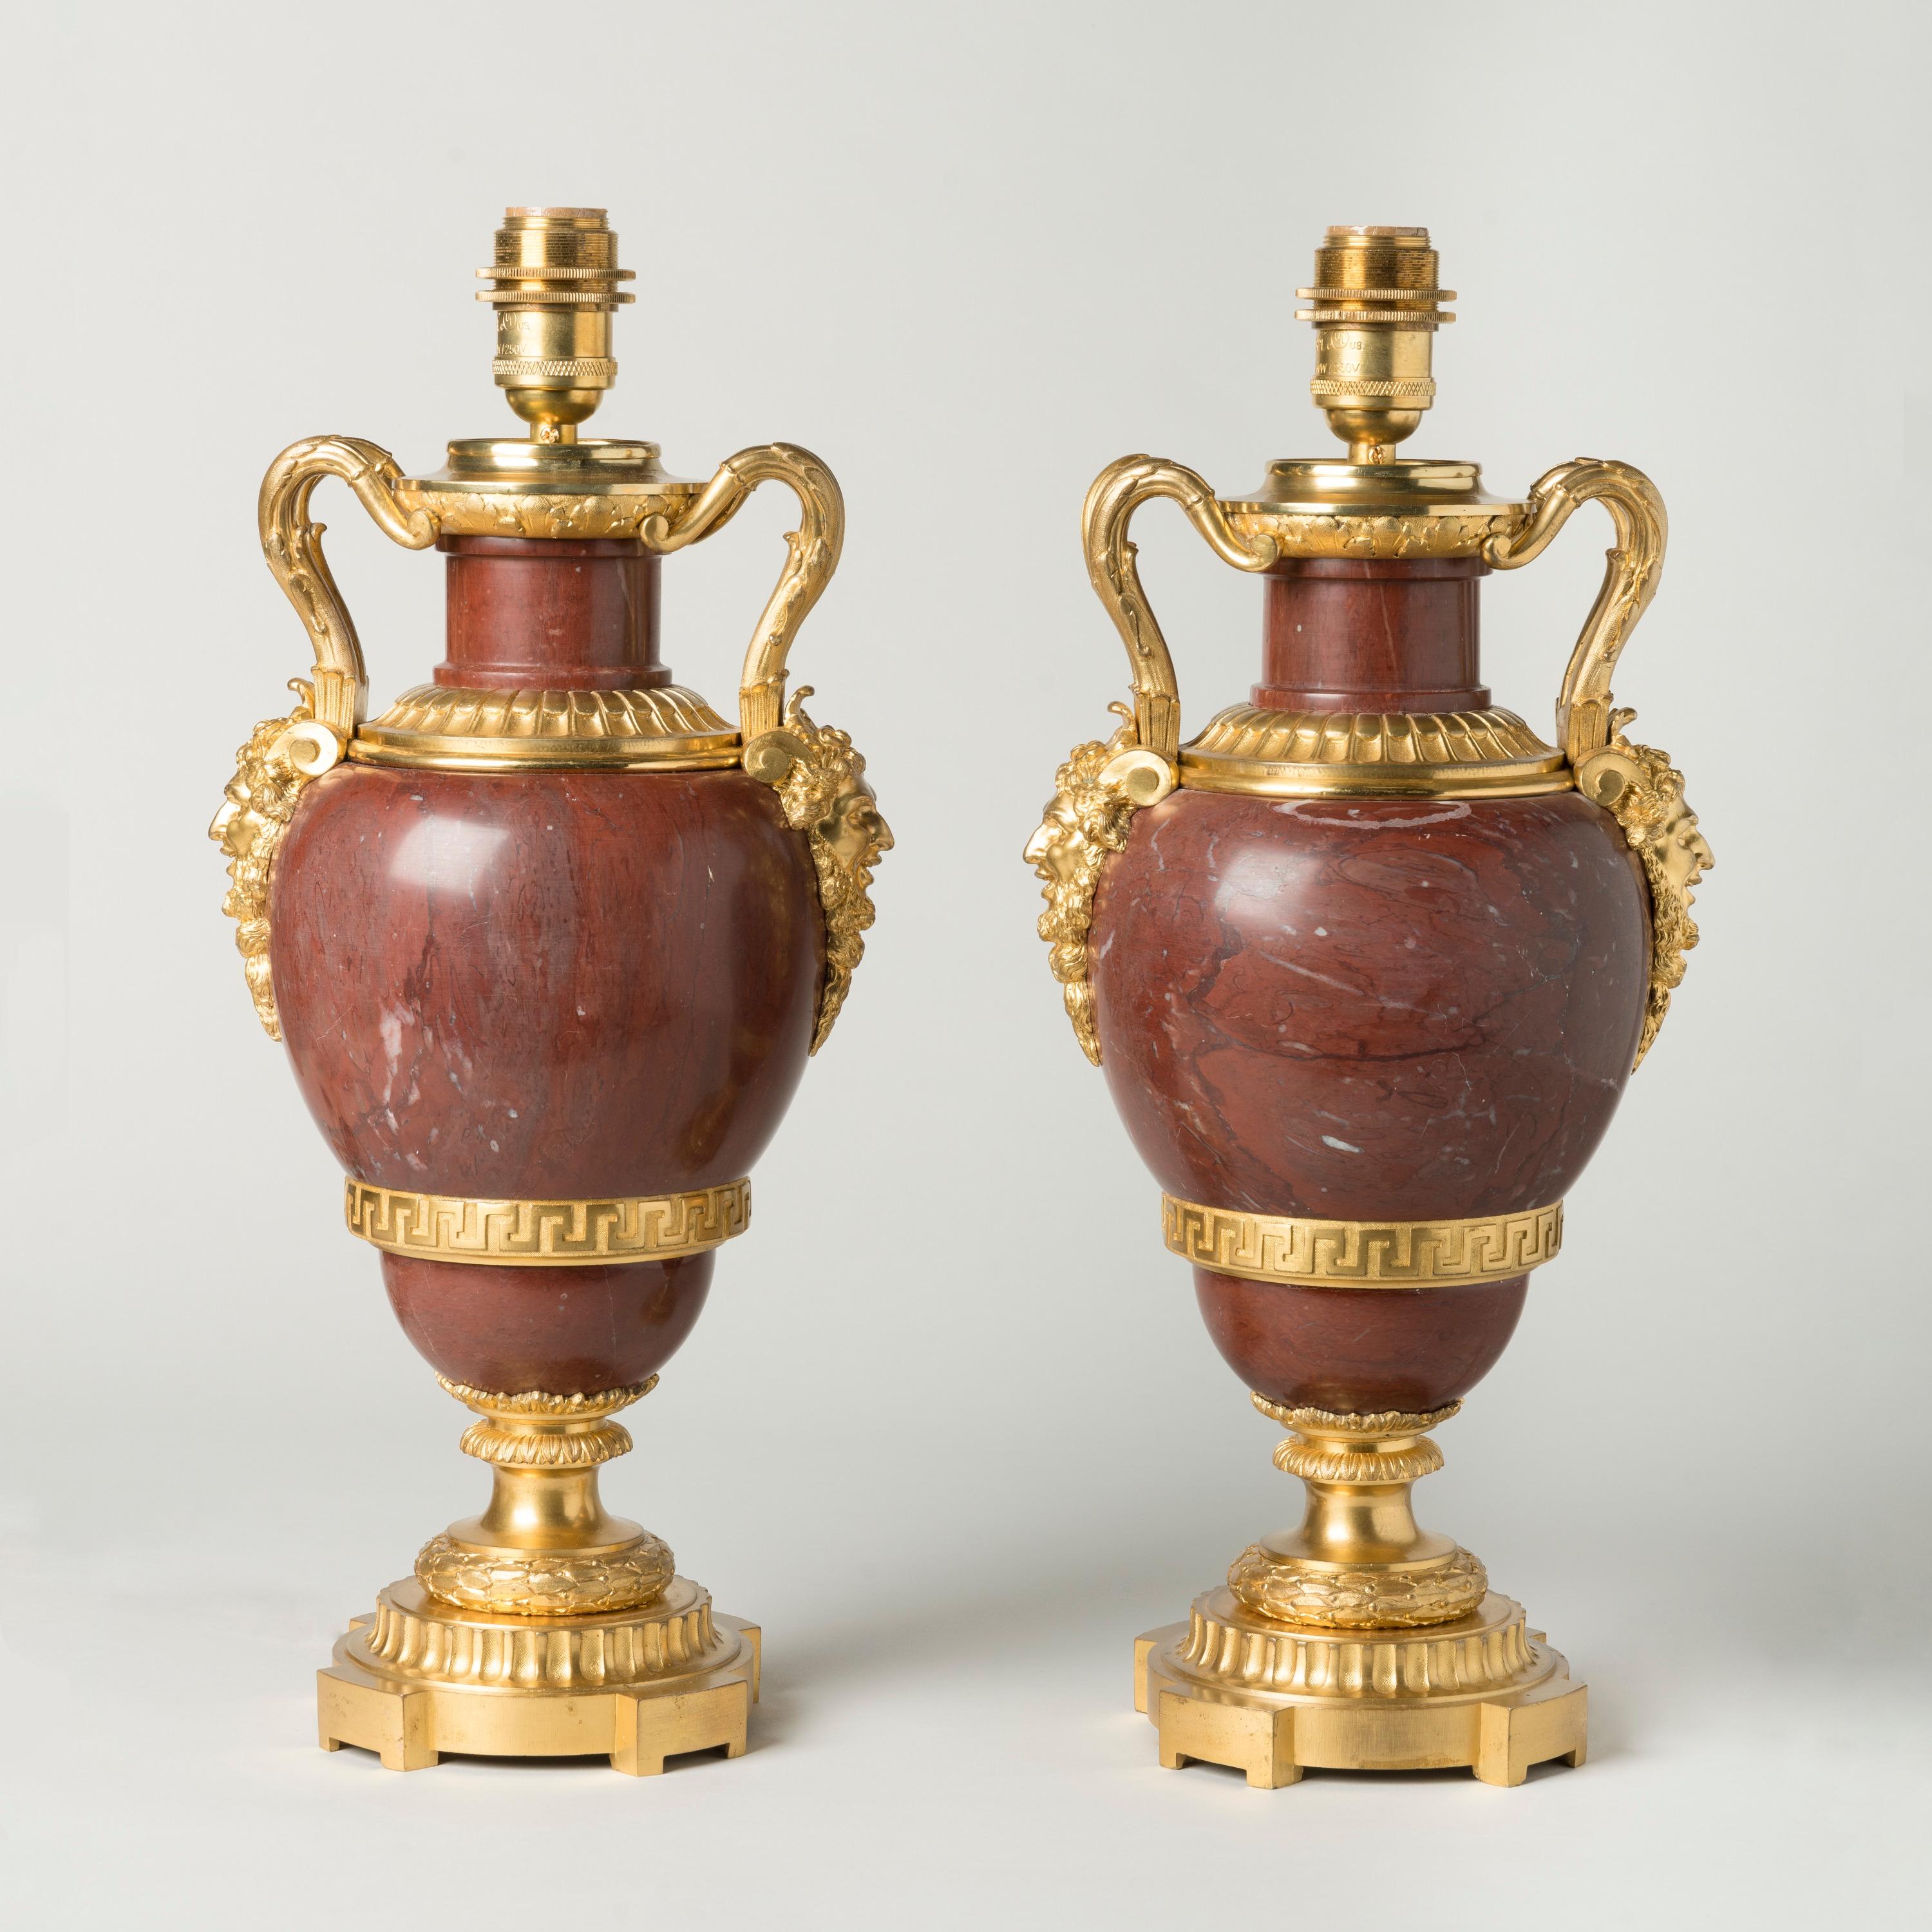 Ein Paar französischer Lampen aus rotem Marmor mit Ormolu-Montierung

Die eiförmigen Vasen sind aus tiefrotem 